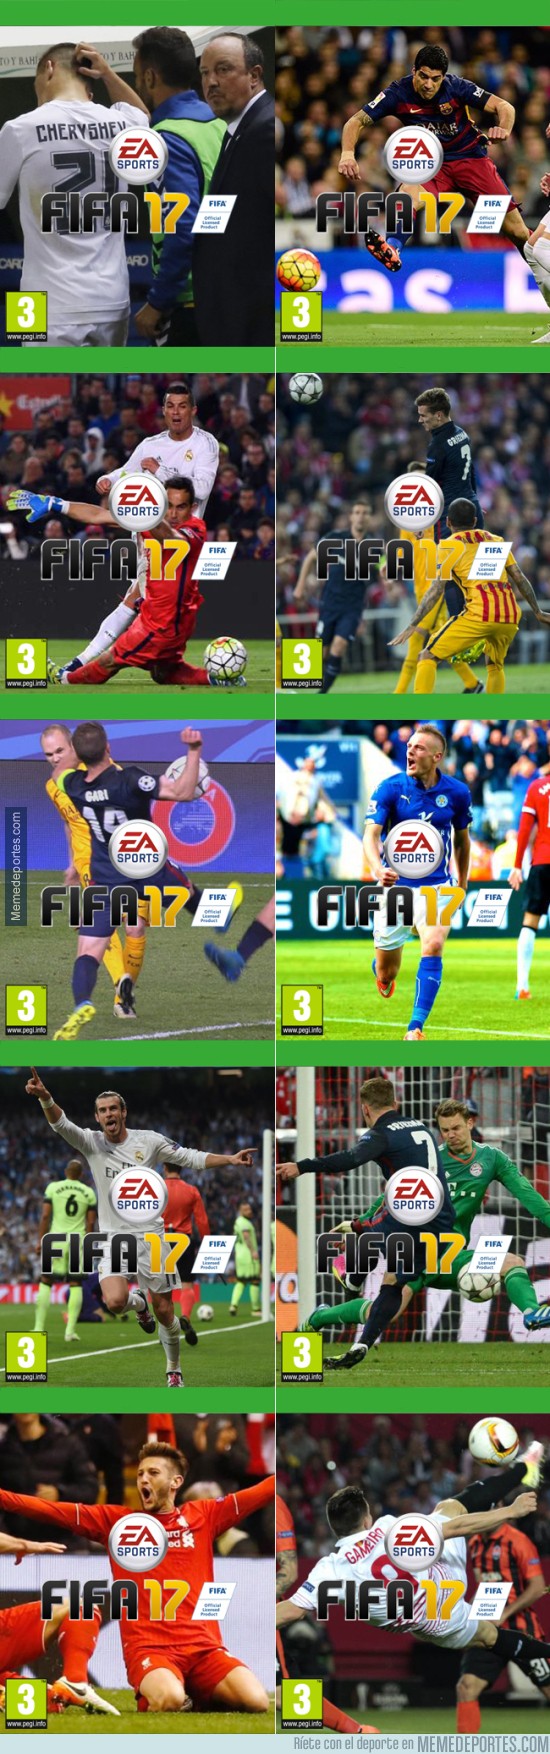 852375 - Algunos de los momentos de la temporada en portadas FIFA, ¿con cuál te quedas?